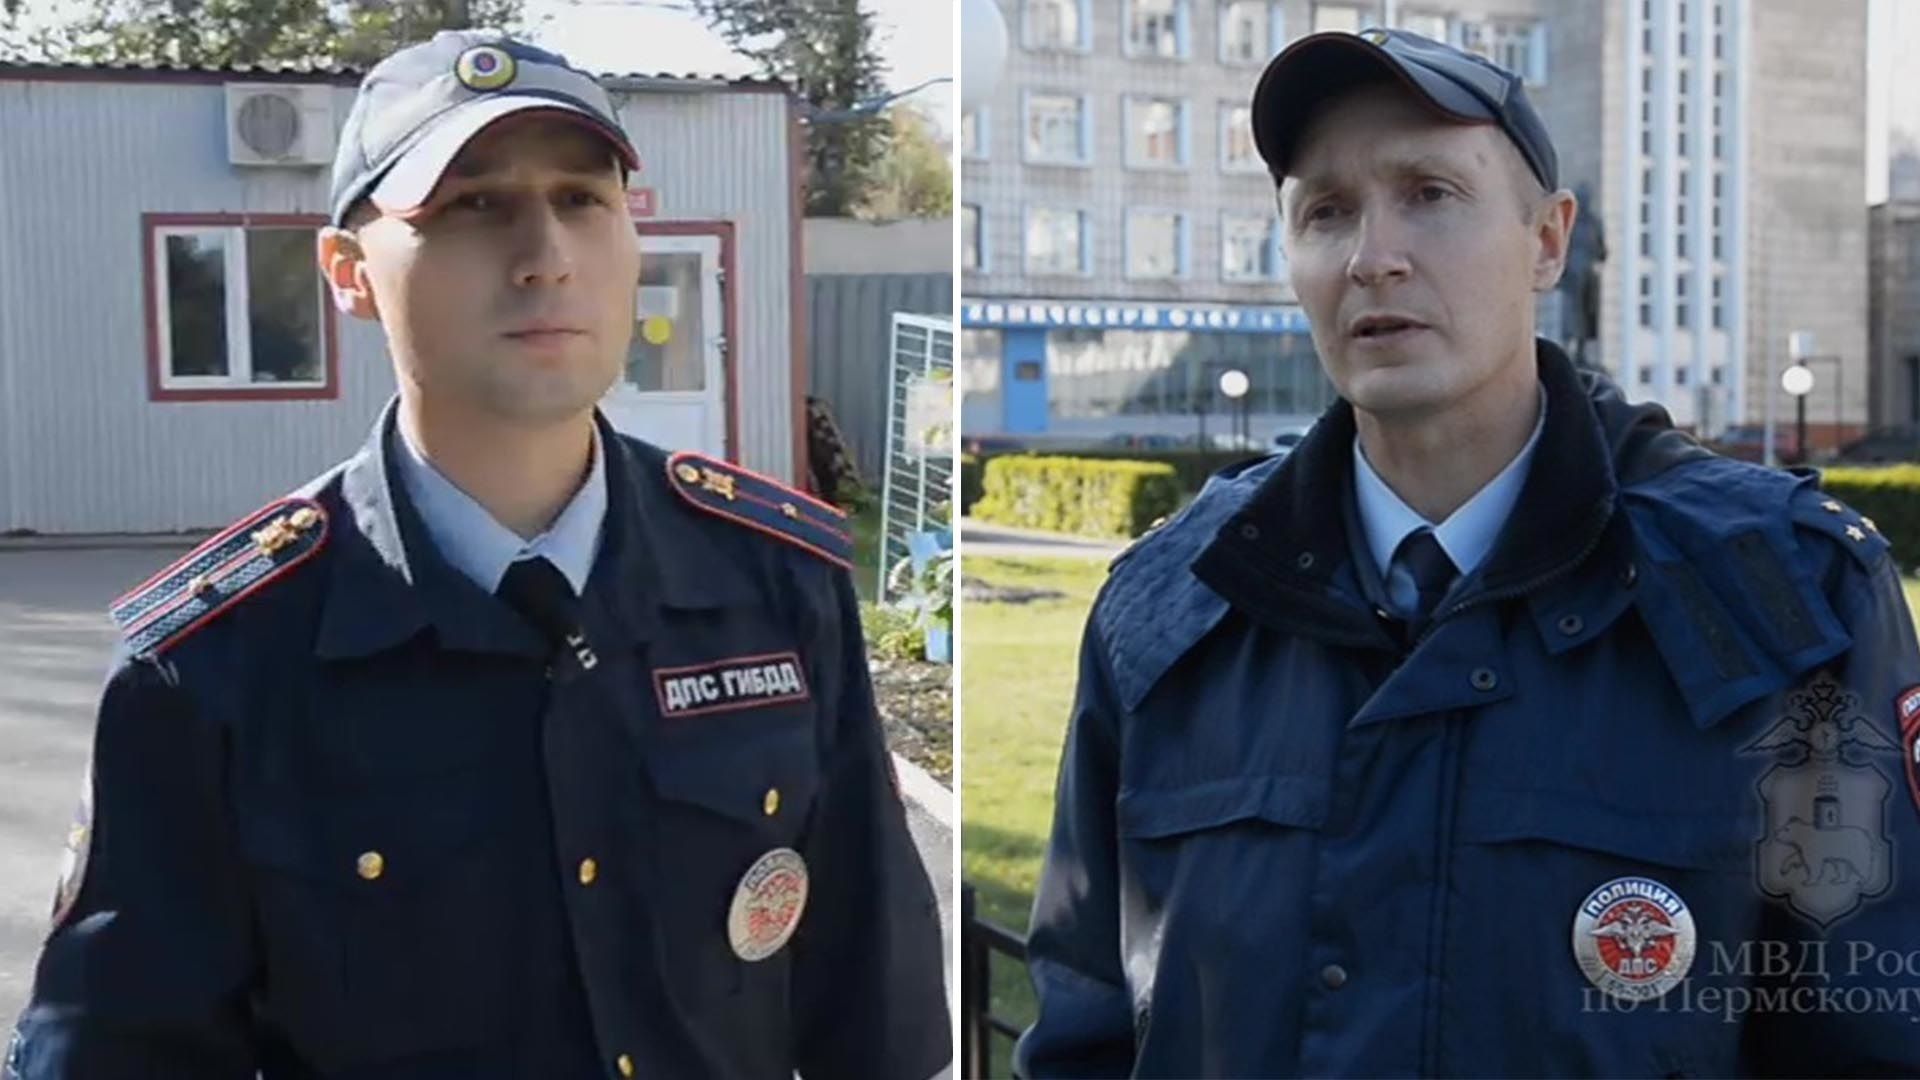 Путин наградил пермских полицейских за спасение людей в вузе